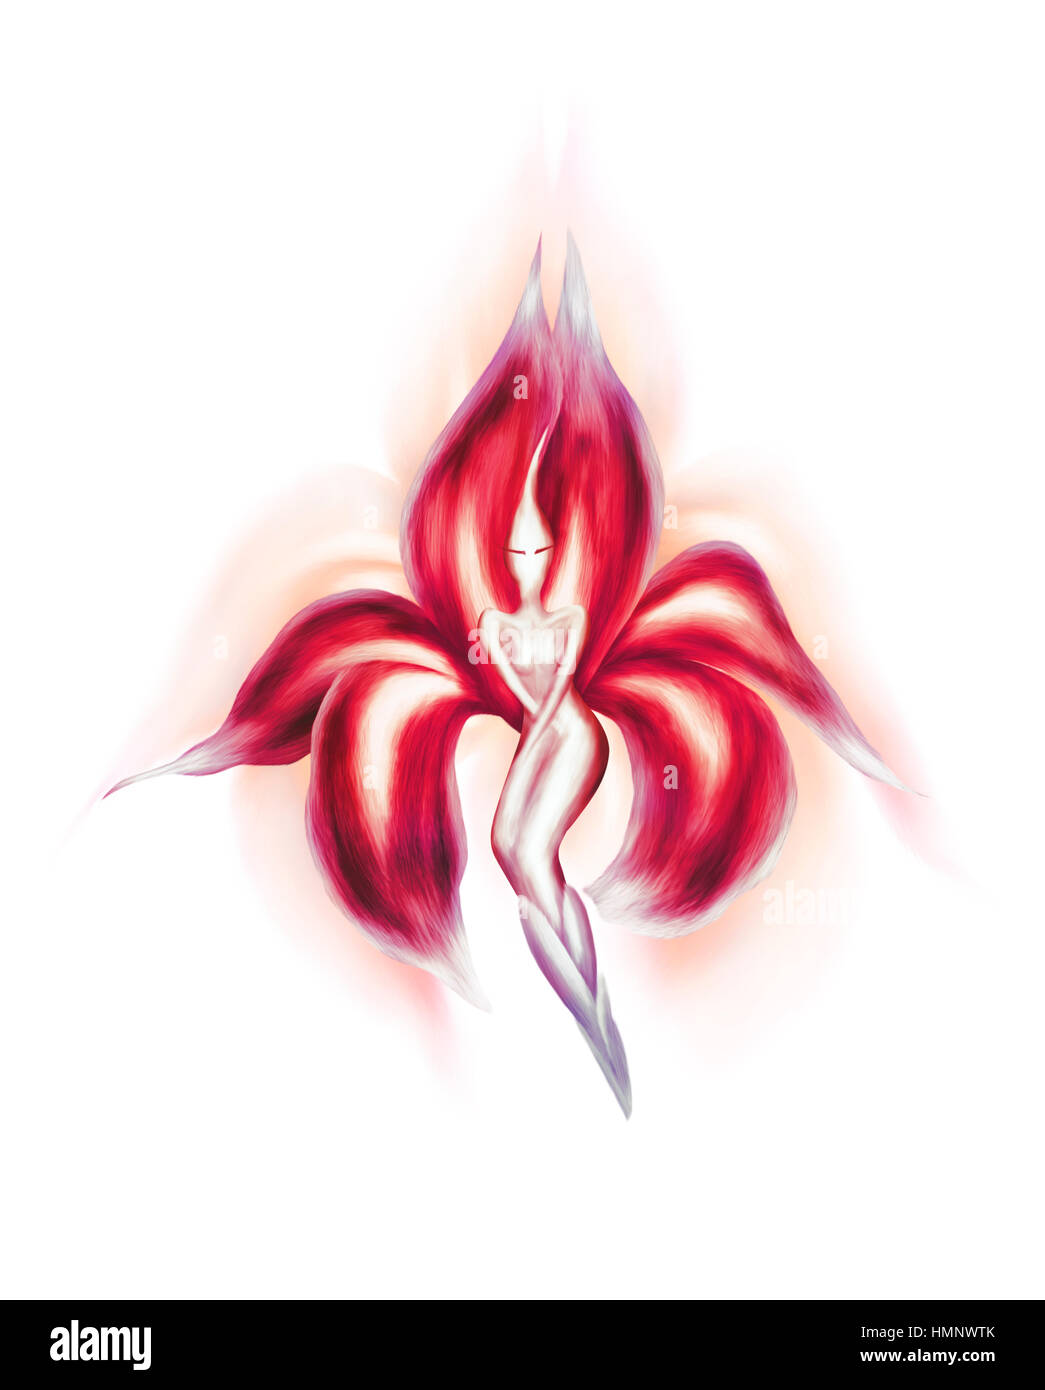 Résumé artistique illustration d'une belle dame danse rouge exotique fleur fée isolé sur fond blanc Banque D'Images